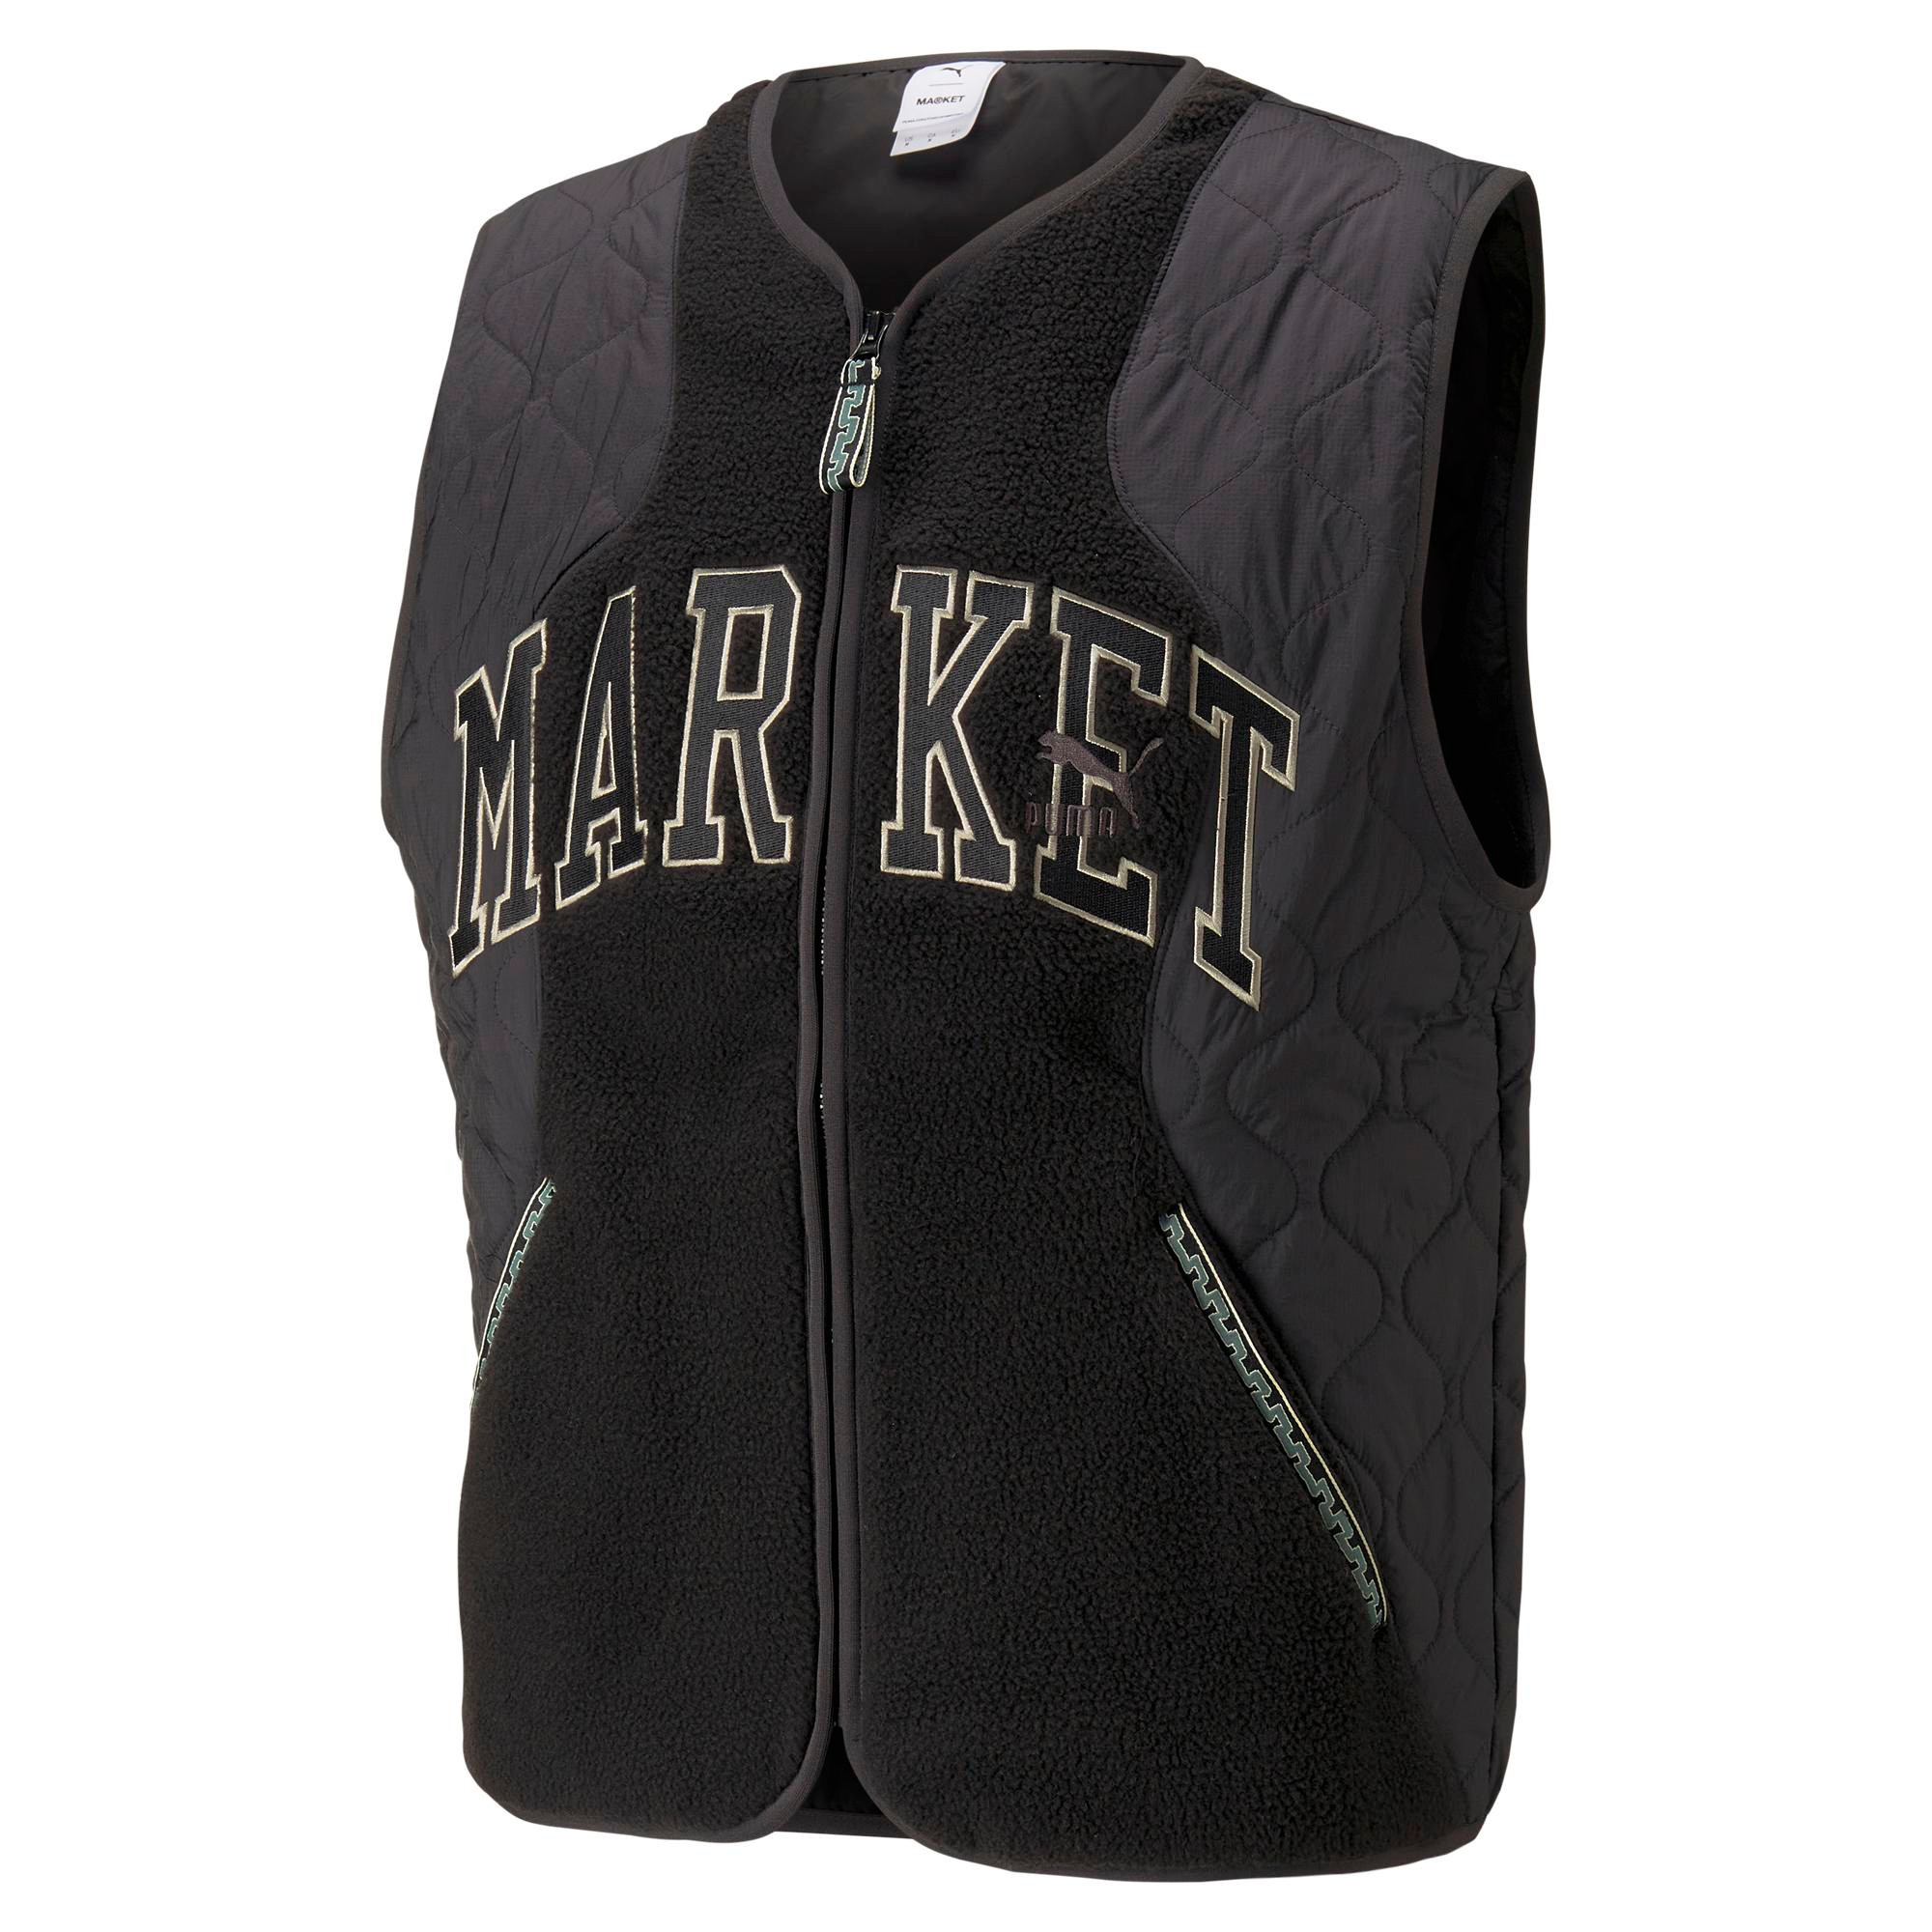 Puma x Market vest, Black, large image number 0